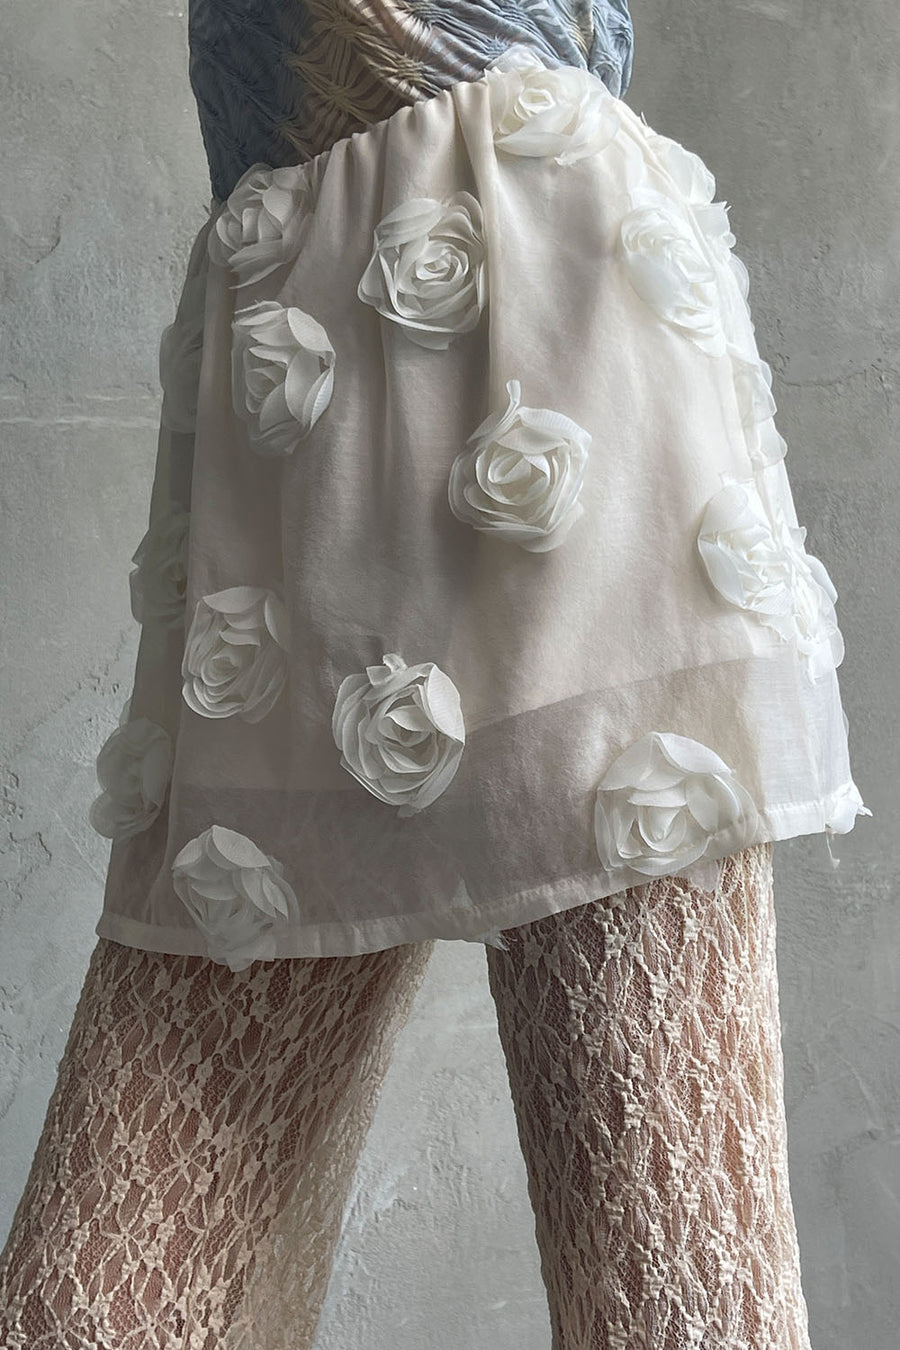 Rose Mini Skirt